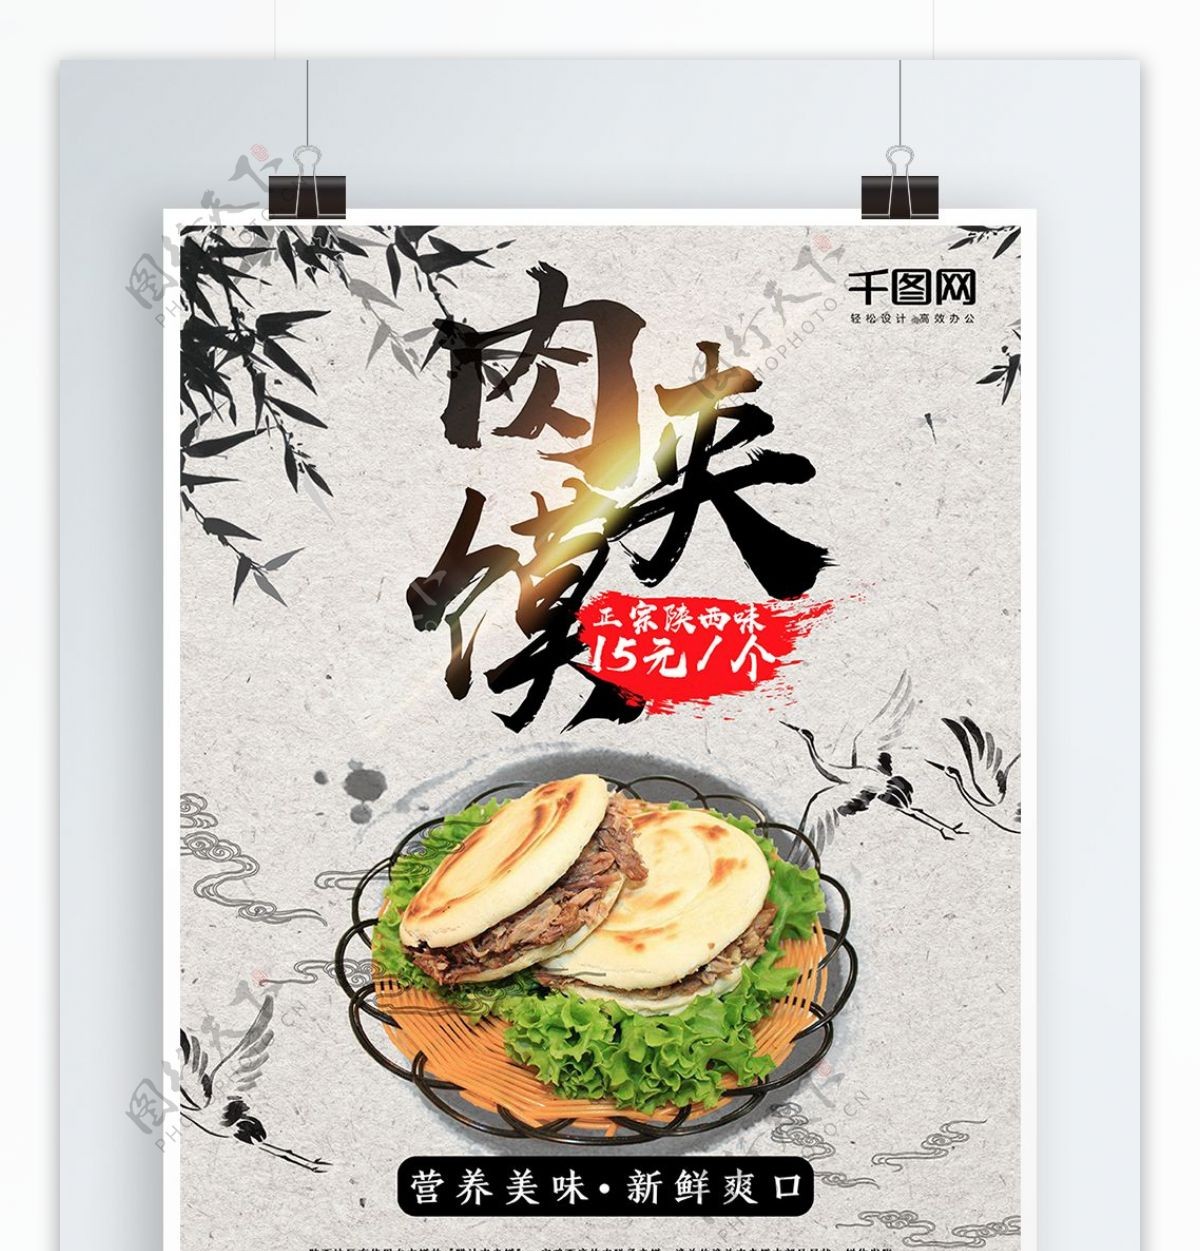 中国风陕西特产肉夹馍美食海报设计